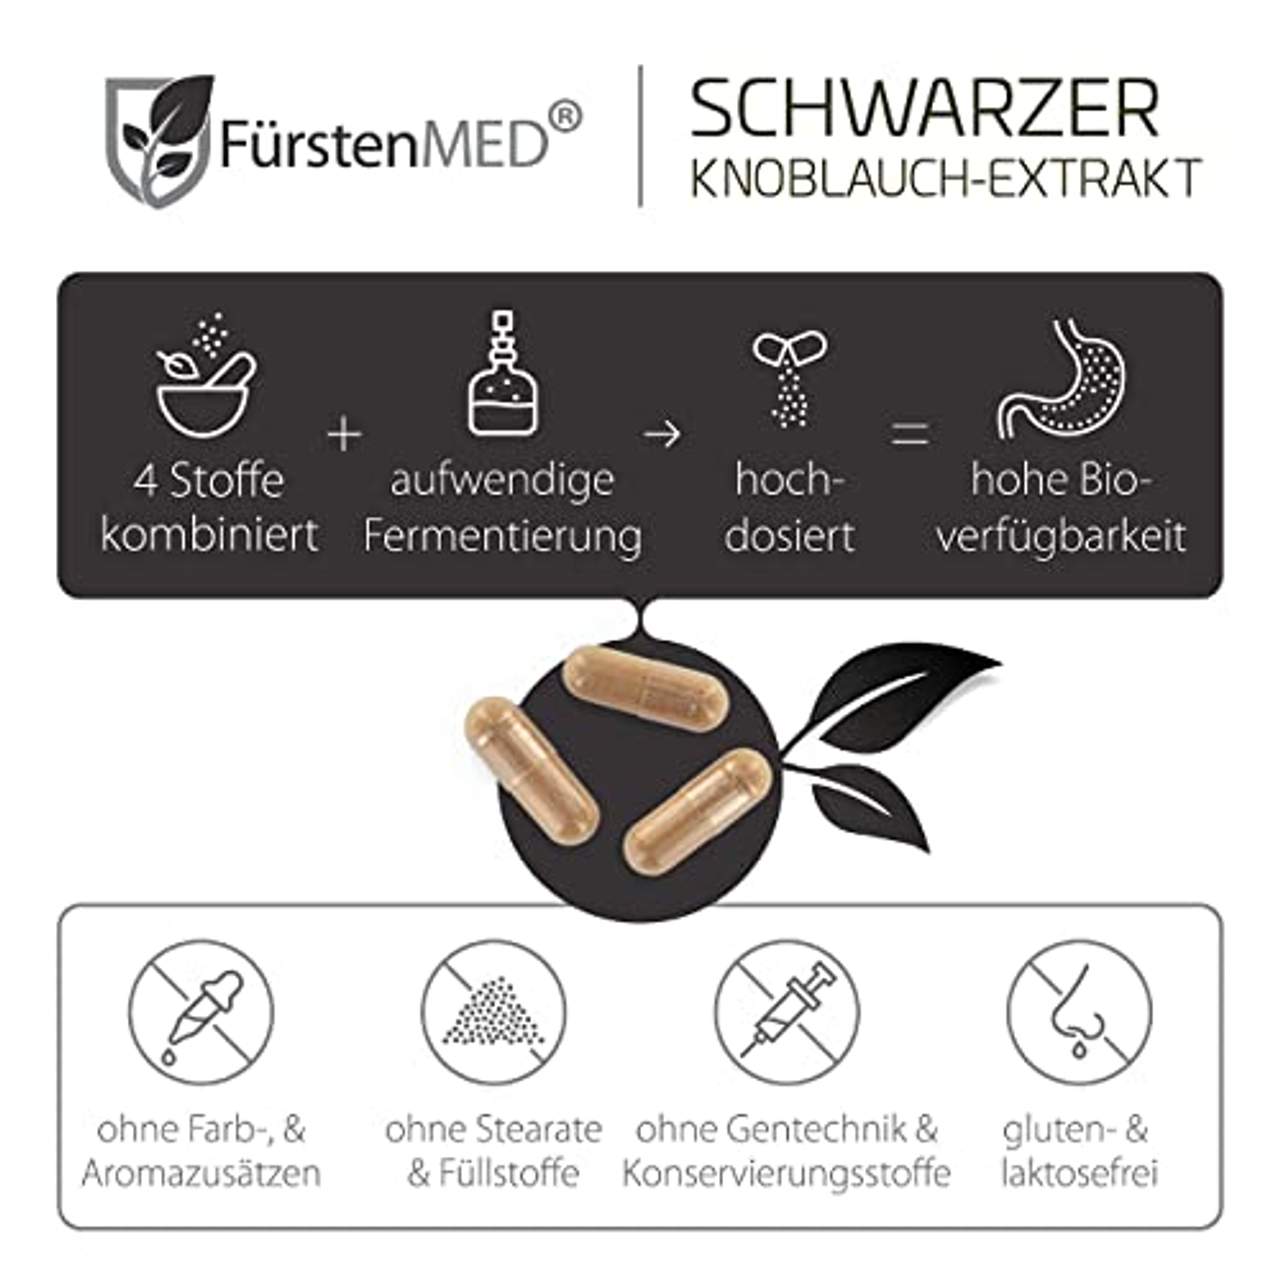 FürstenMED Fermentierter Schwarzer Knoblauch Extrakt